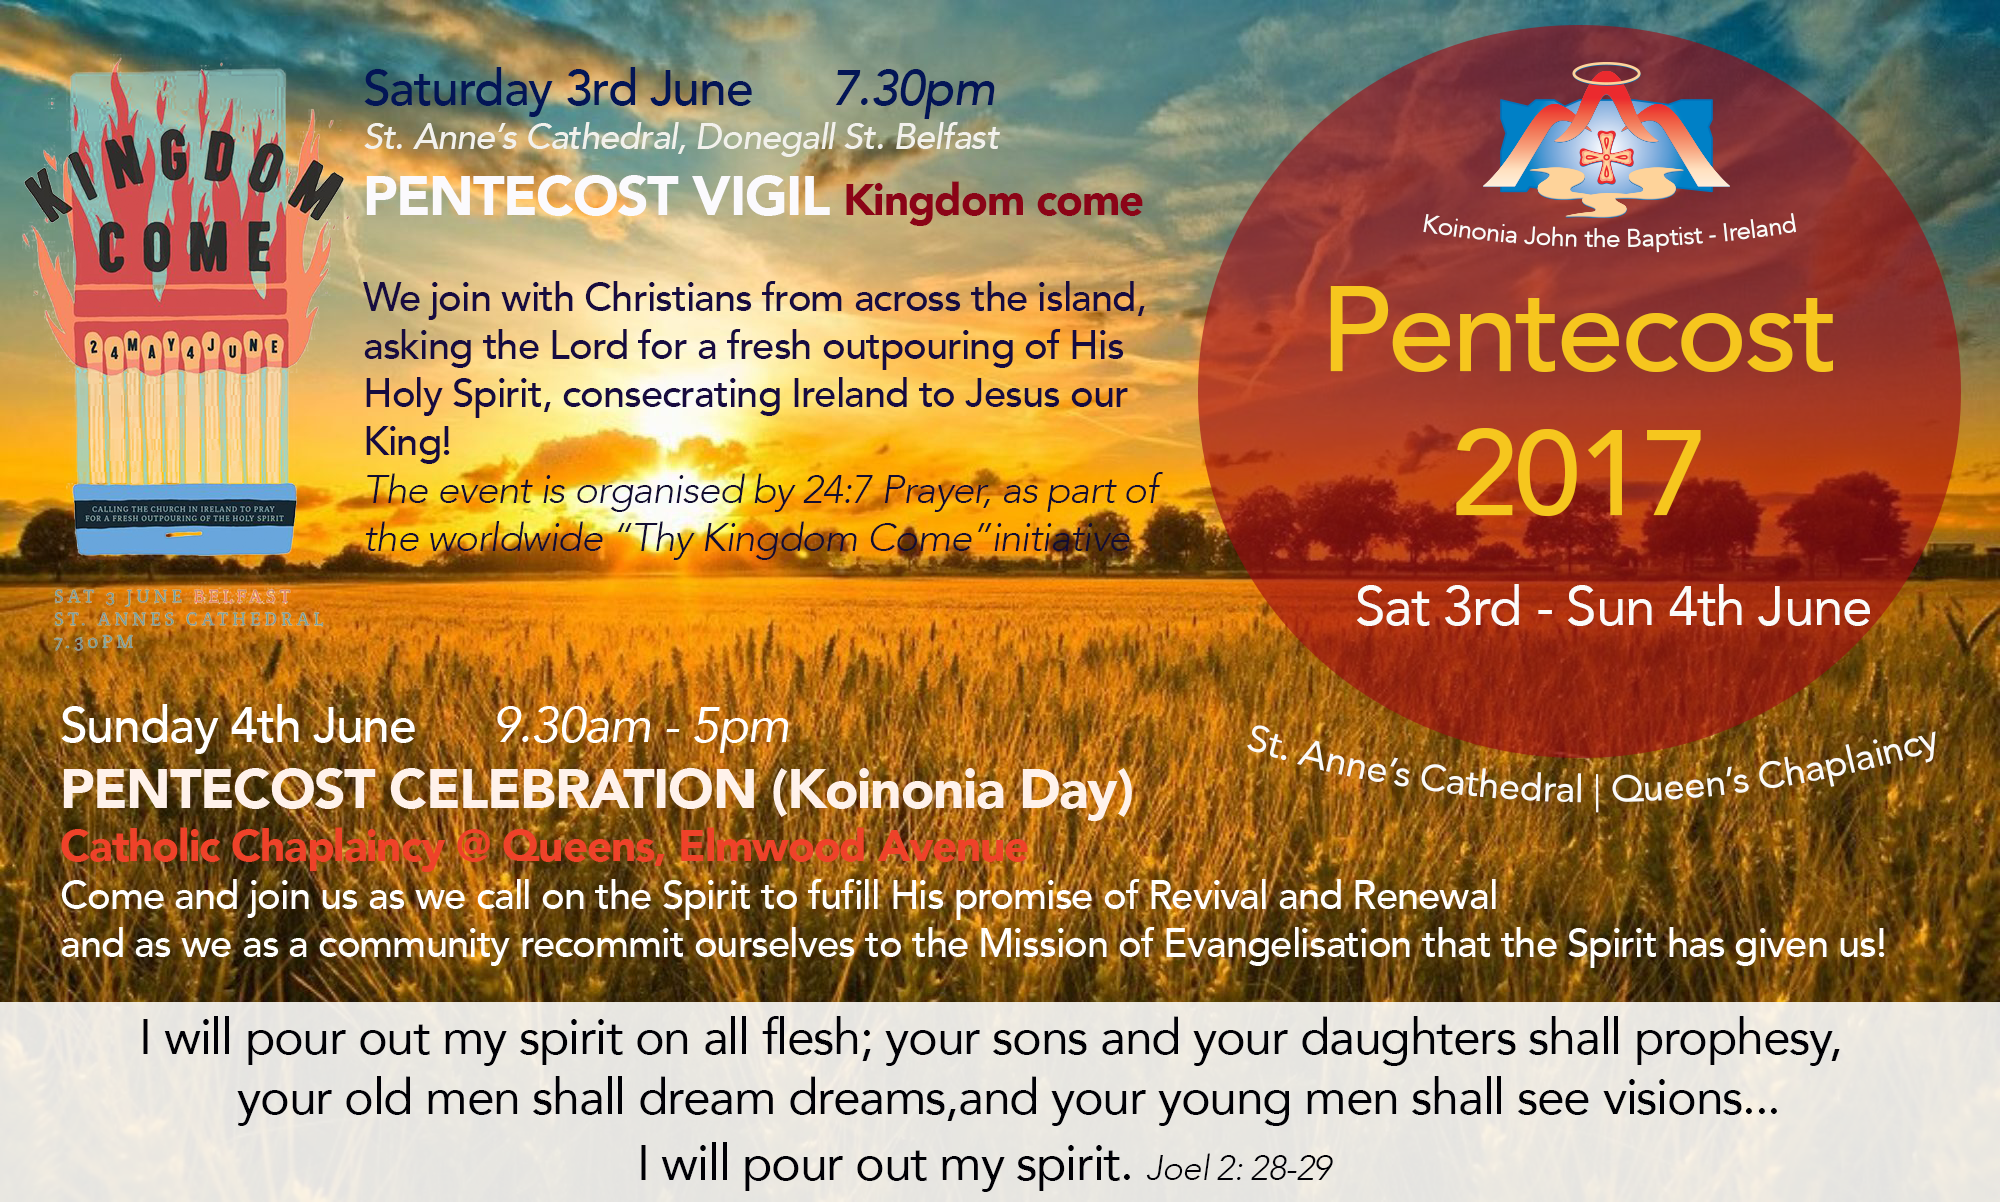 KOINONIA JOHN THE BAPTIST IRELAND – Pentecost Weekend